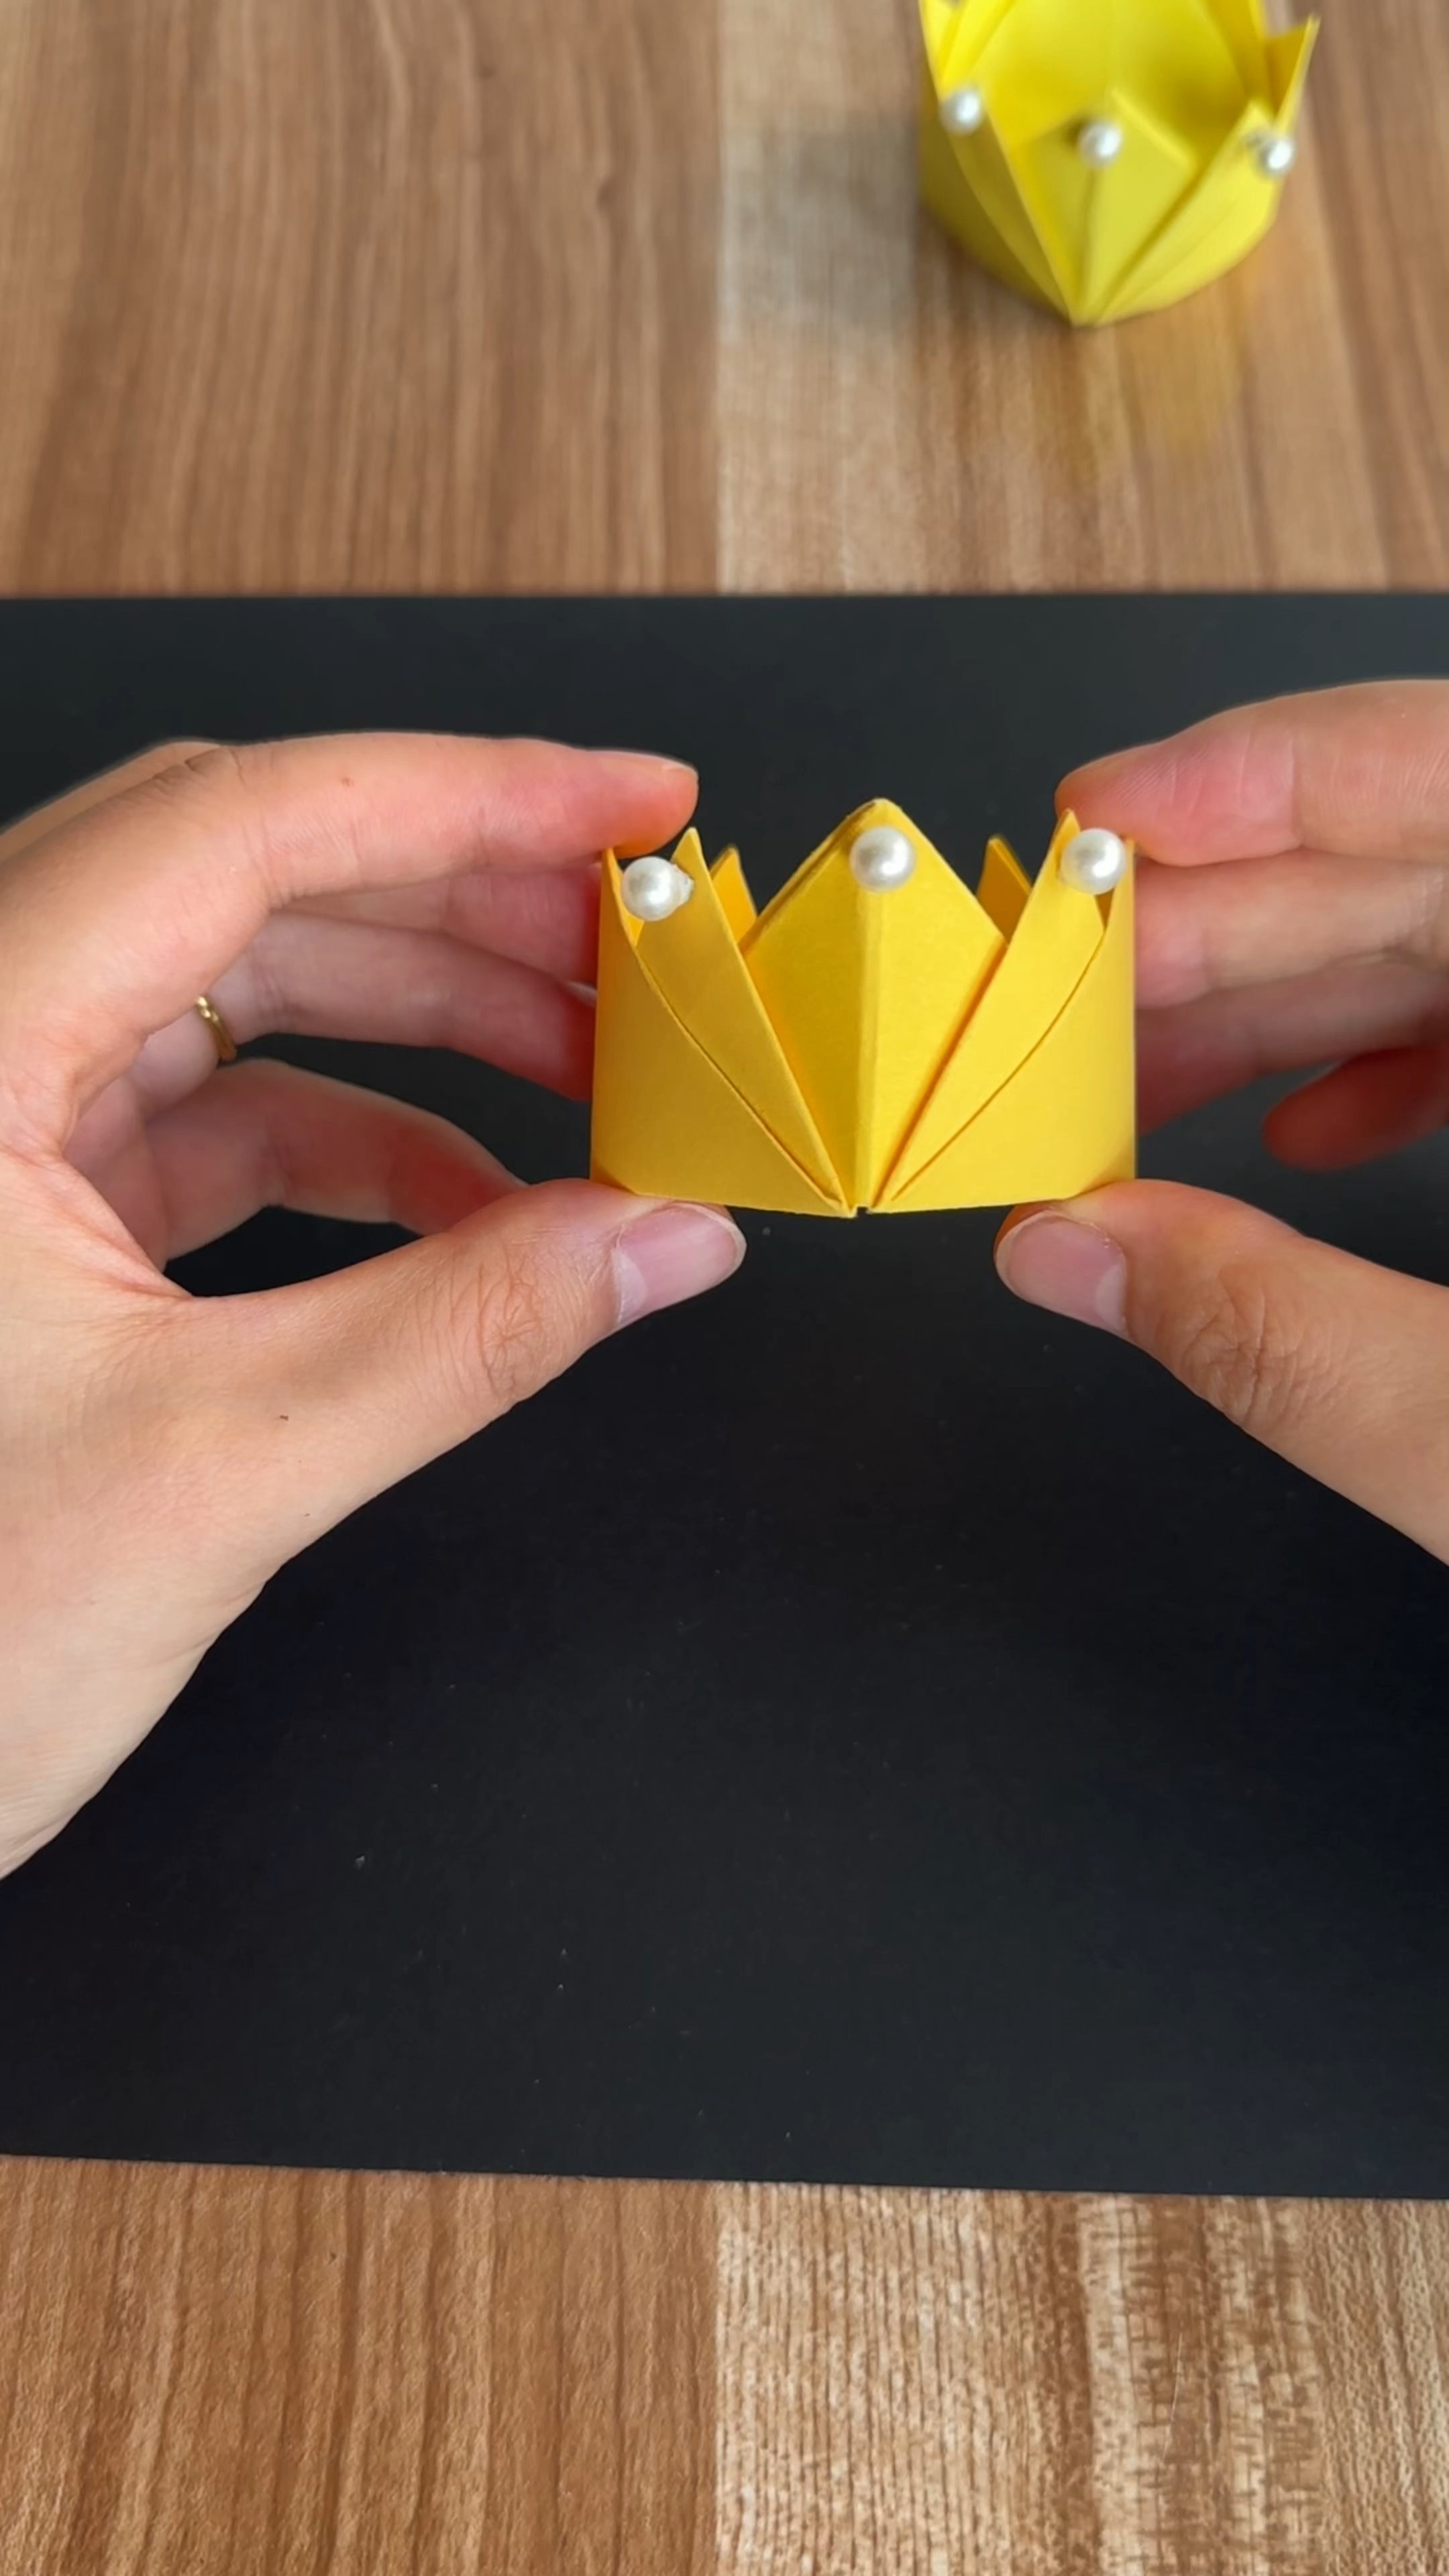 皇冠折纸教程